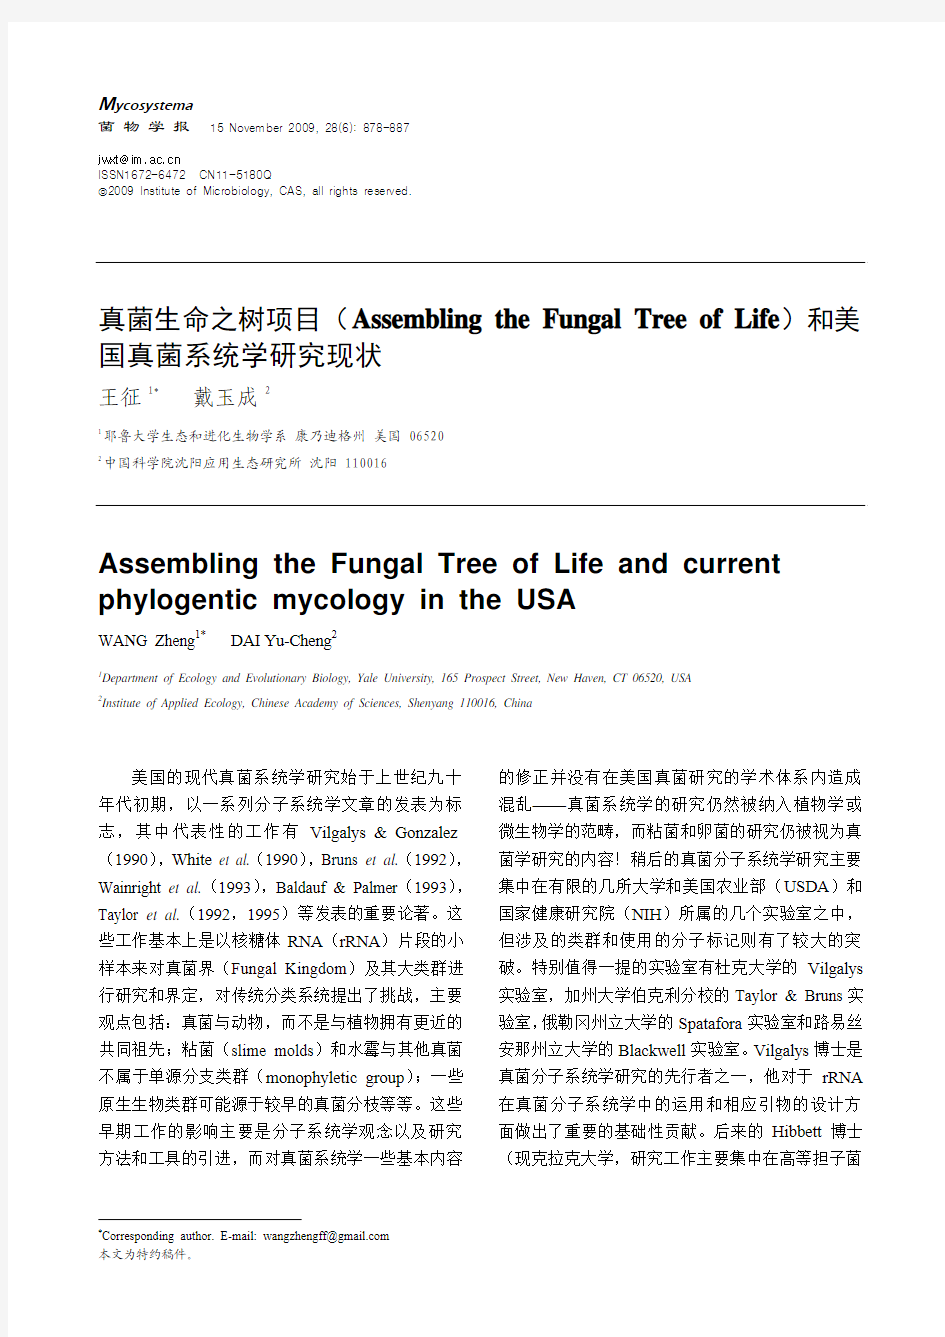 真菌生命之树项目(Assembling the Fungal Tree of Life)和美国真菌系统学研究现状